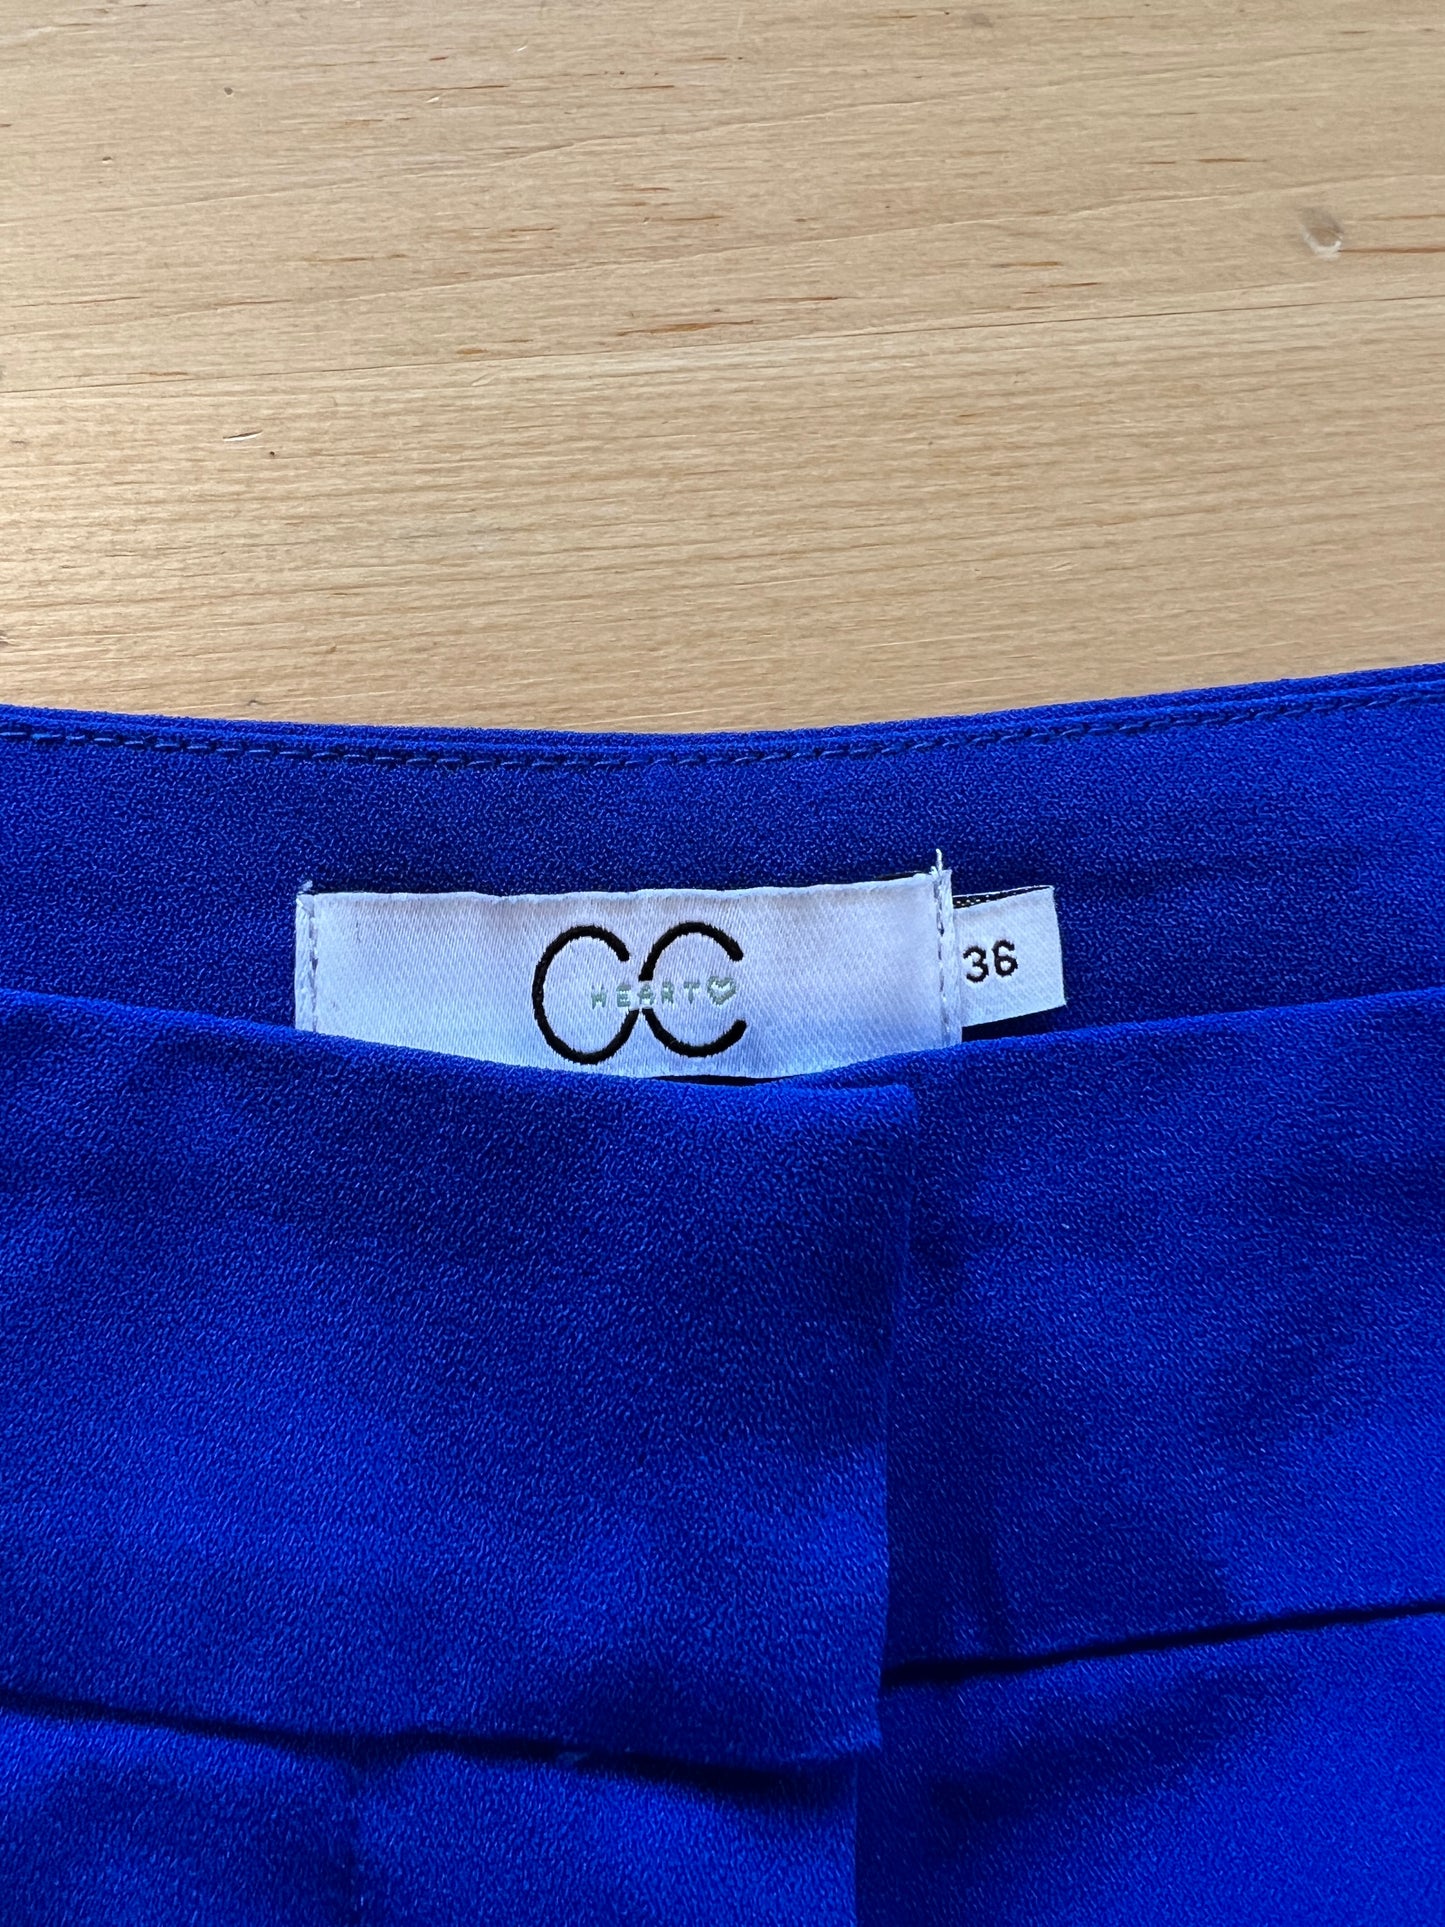 Pantalon tailleur bleu cobalt à coupe ample et droite (6)